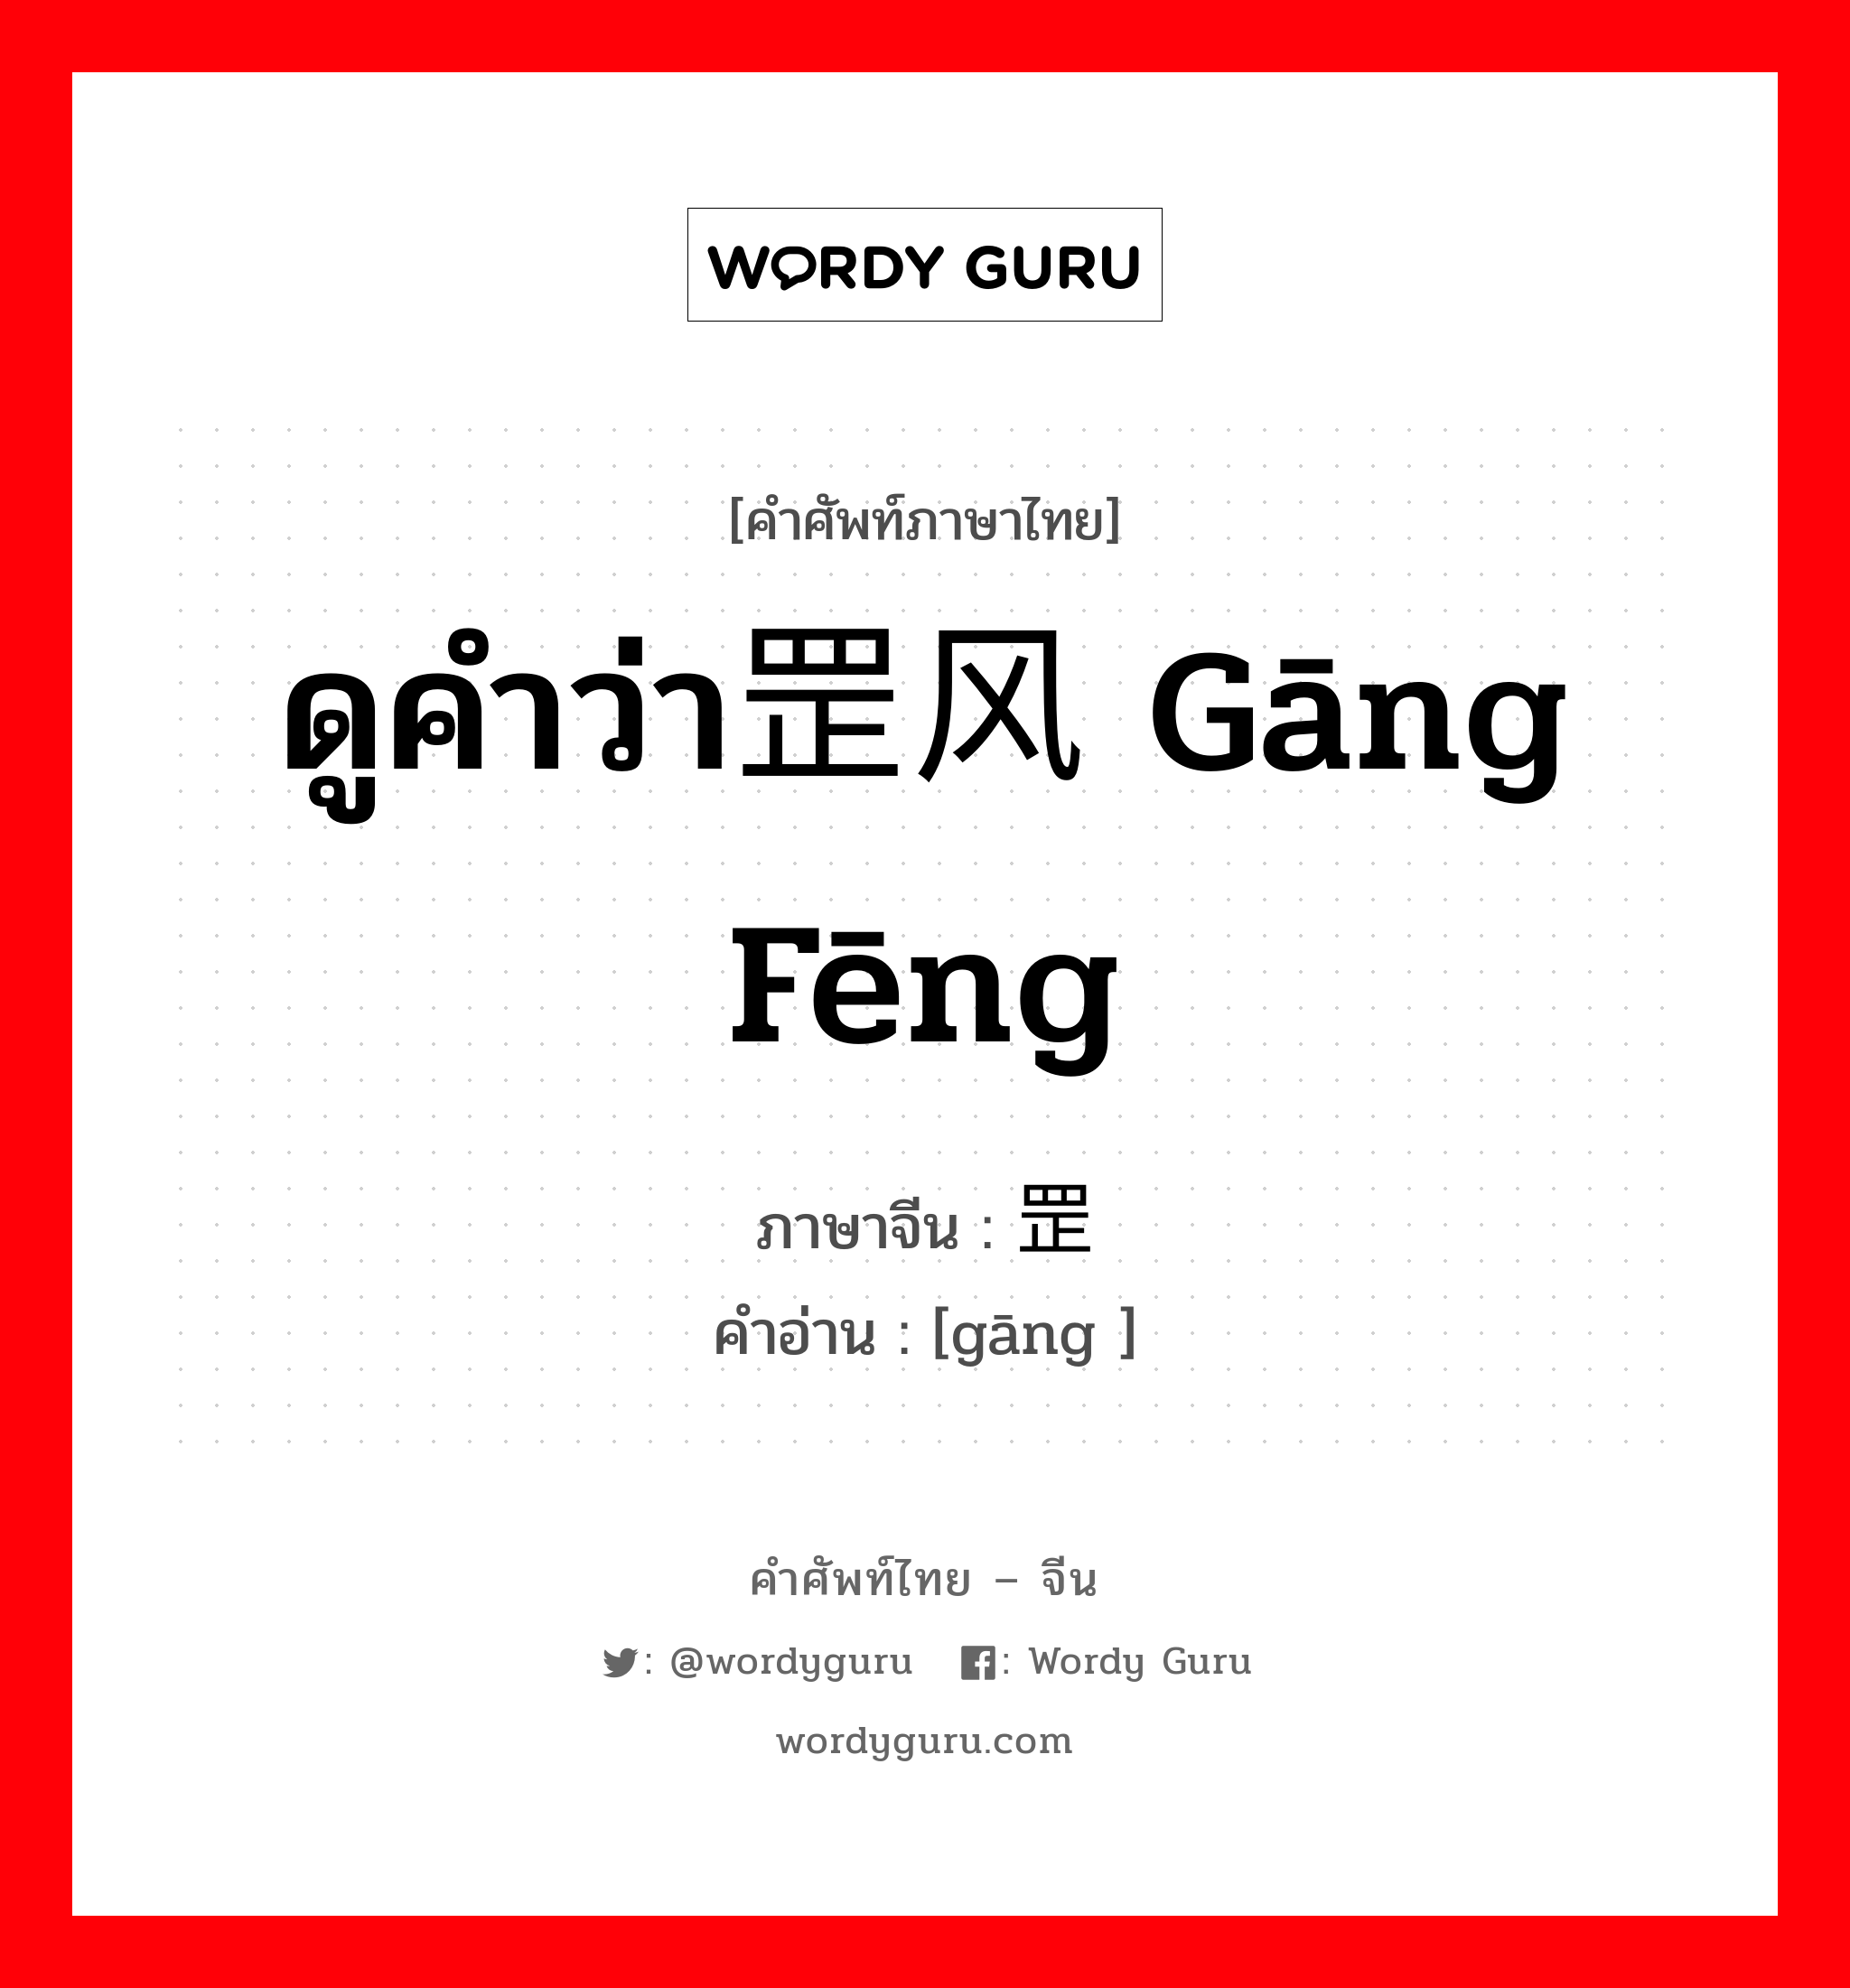 ดูคำว่า罡风 gāng fēng ภาษาจีนคืออะไร, คำศัพท์ภาษาไทย - จีน ดูคำว่า罡风 gāng fēng ภาษาจีน 罡 คำอ่าน [gāng ]